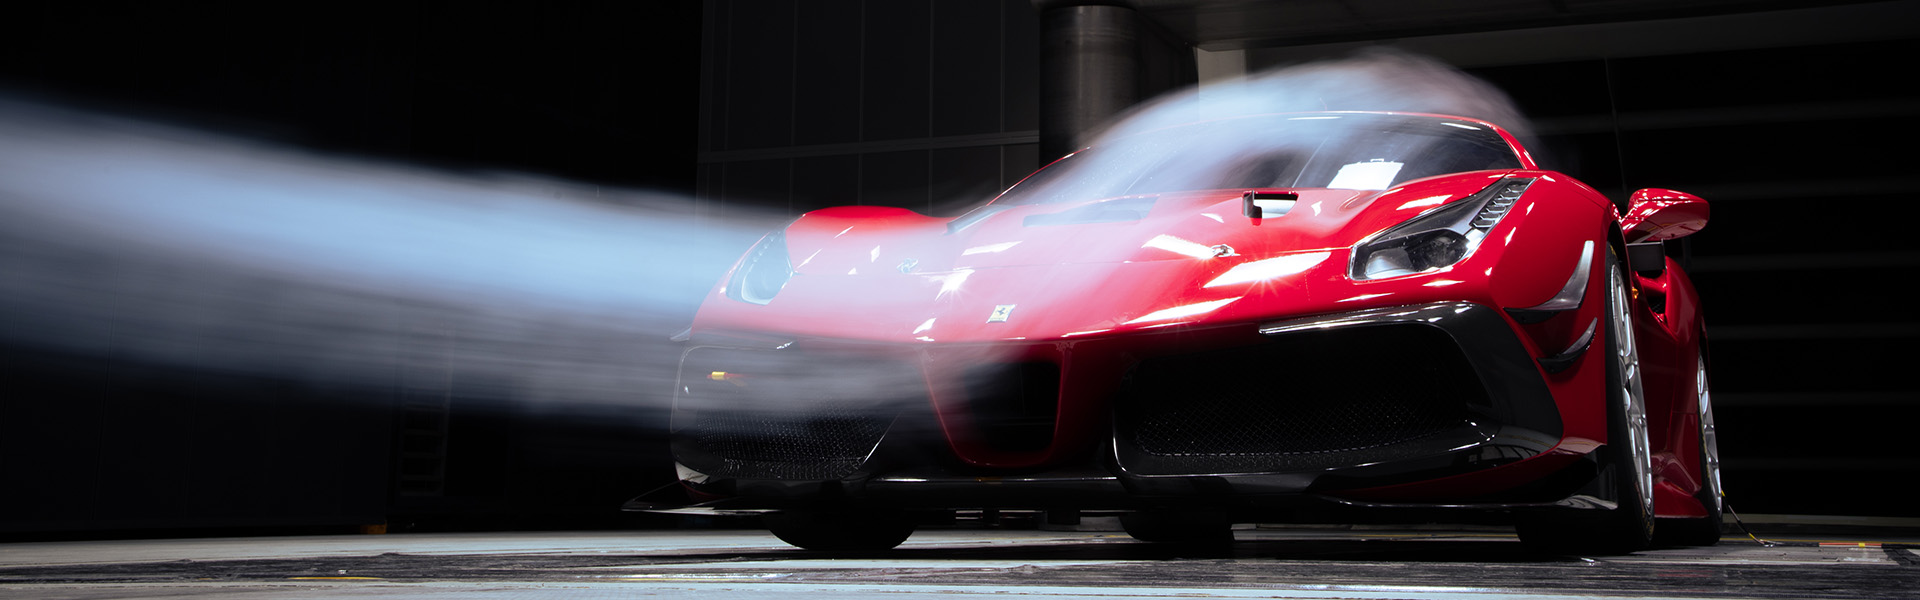 Red Ferrari in Climatic Aerodynamic Wind Tunnel with Smoke Gun